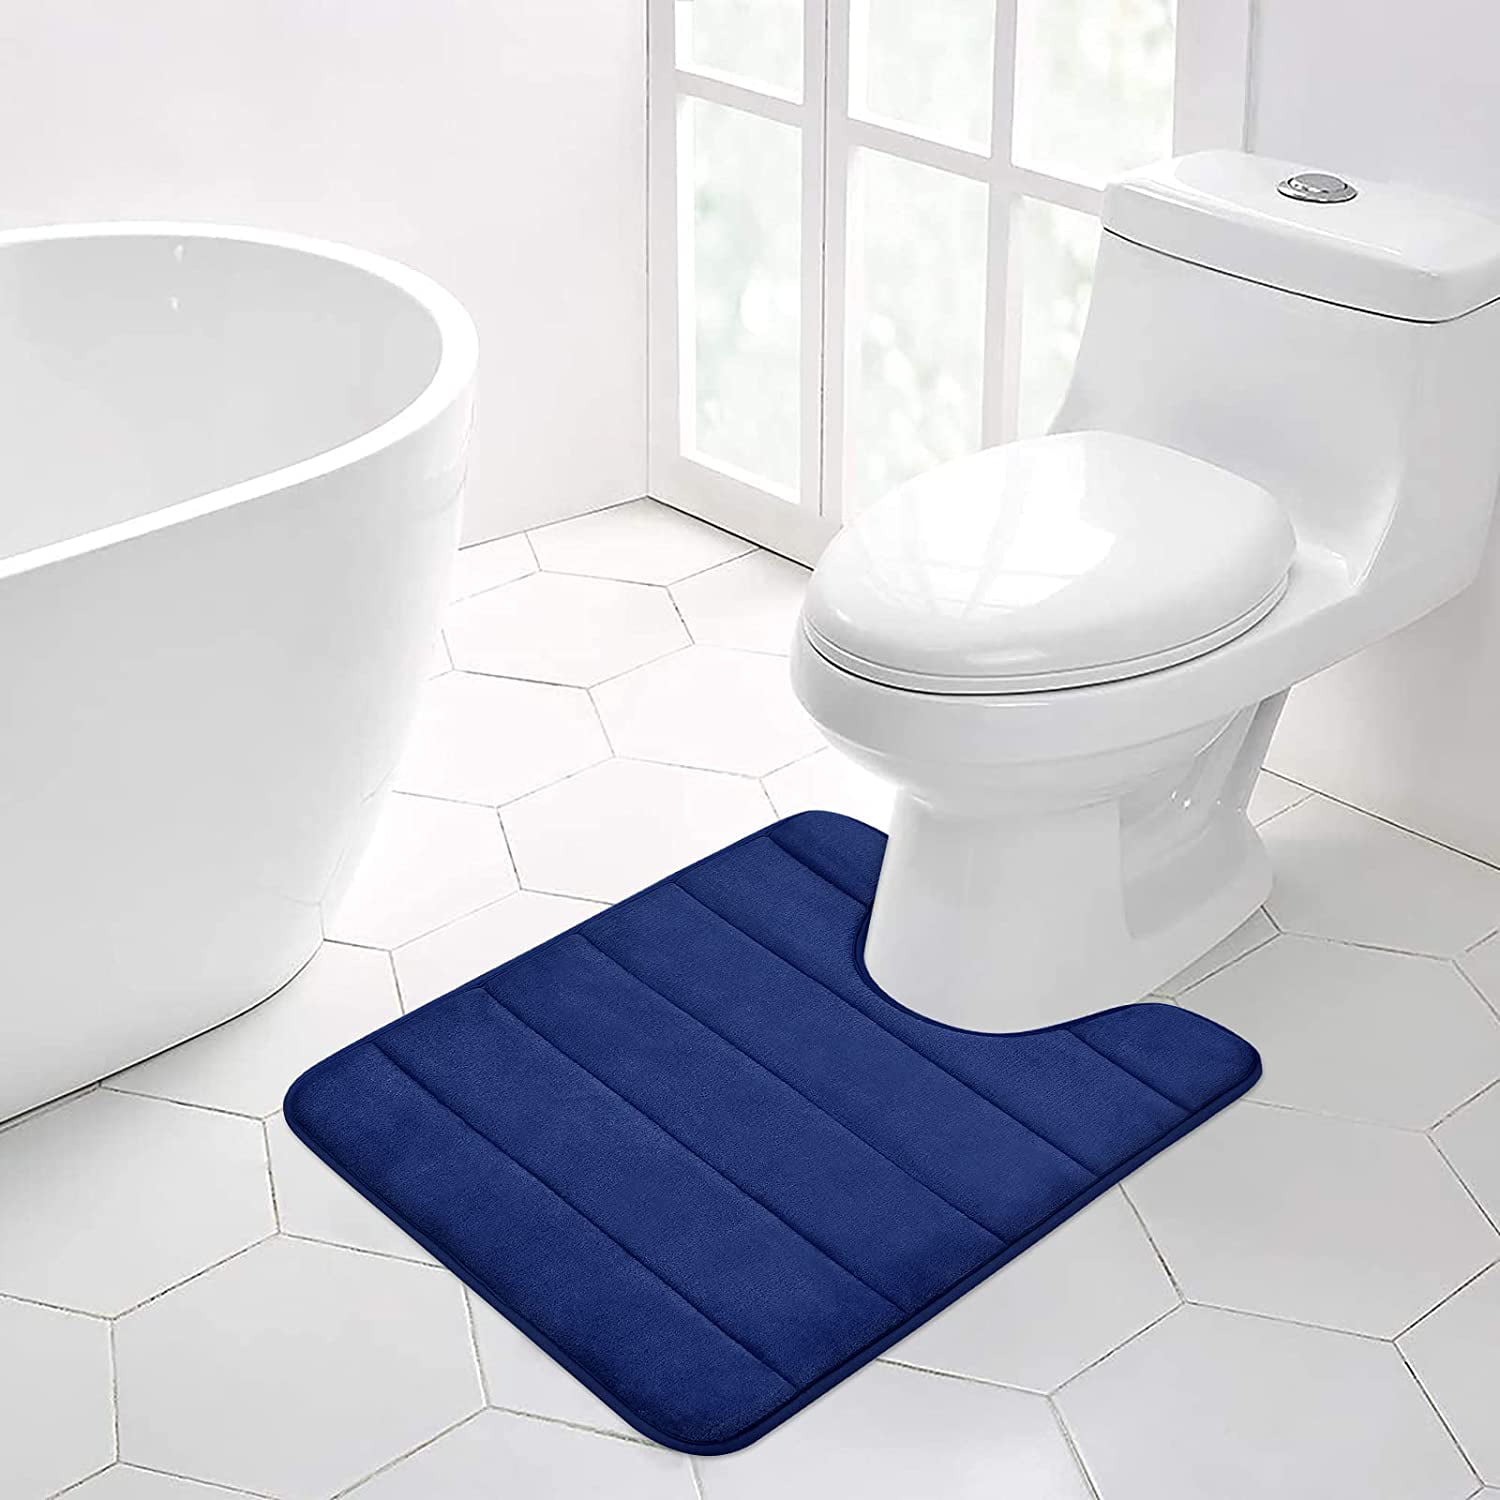 Details about   4PCS/Set Tropical forest plant Shower Curtain Toilet Cover Rug Bath Mat Rug Set 